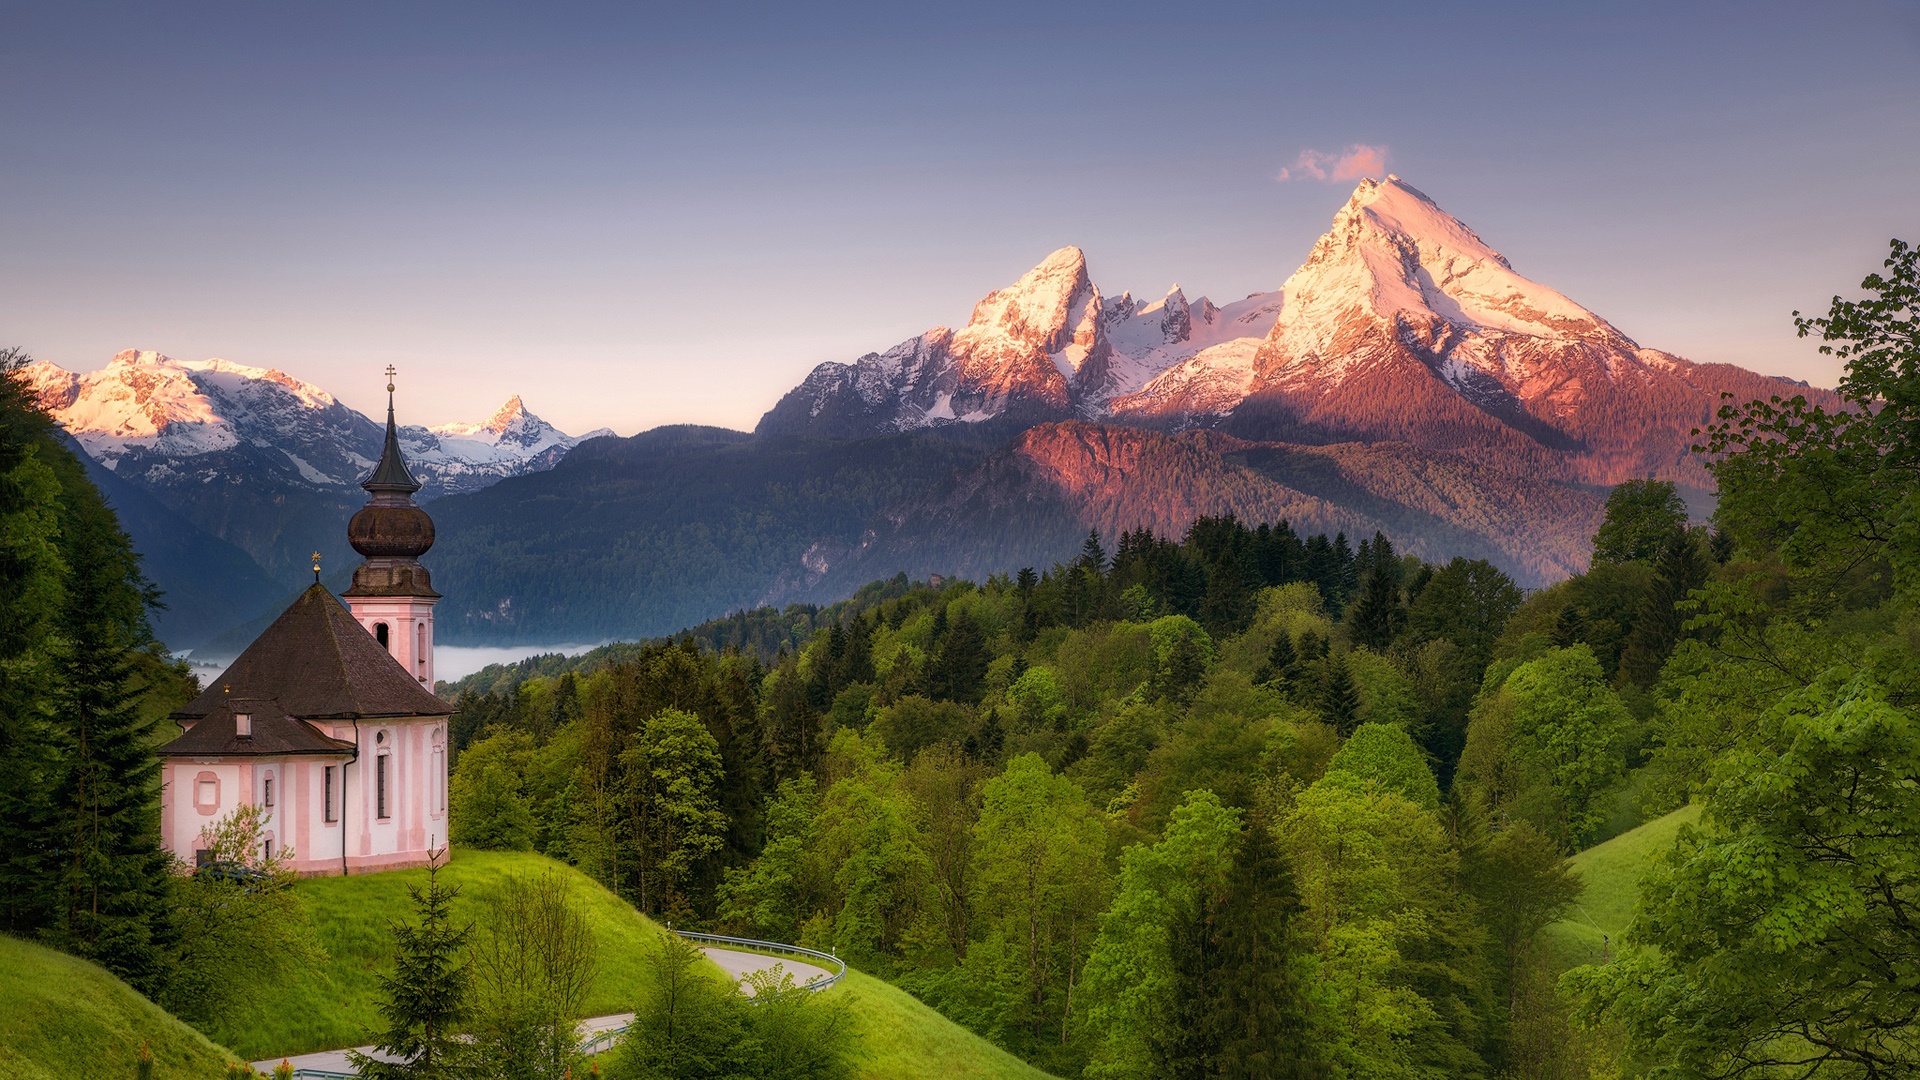 新天鹅堡,城堡,巴伐利亚,4K风景图片壁纸-千叶网